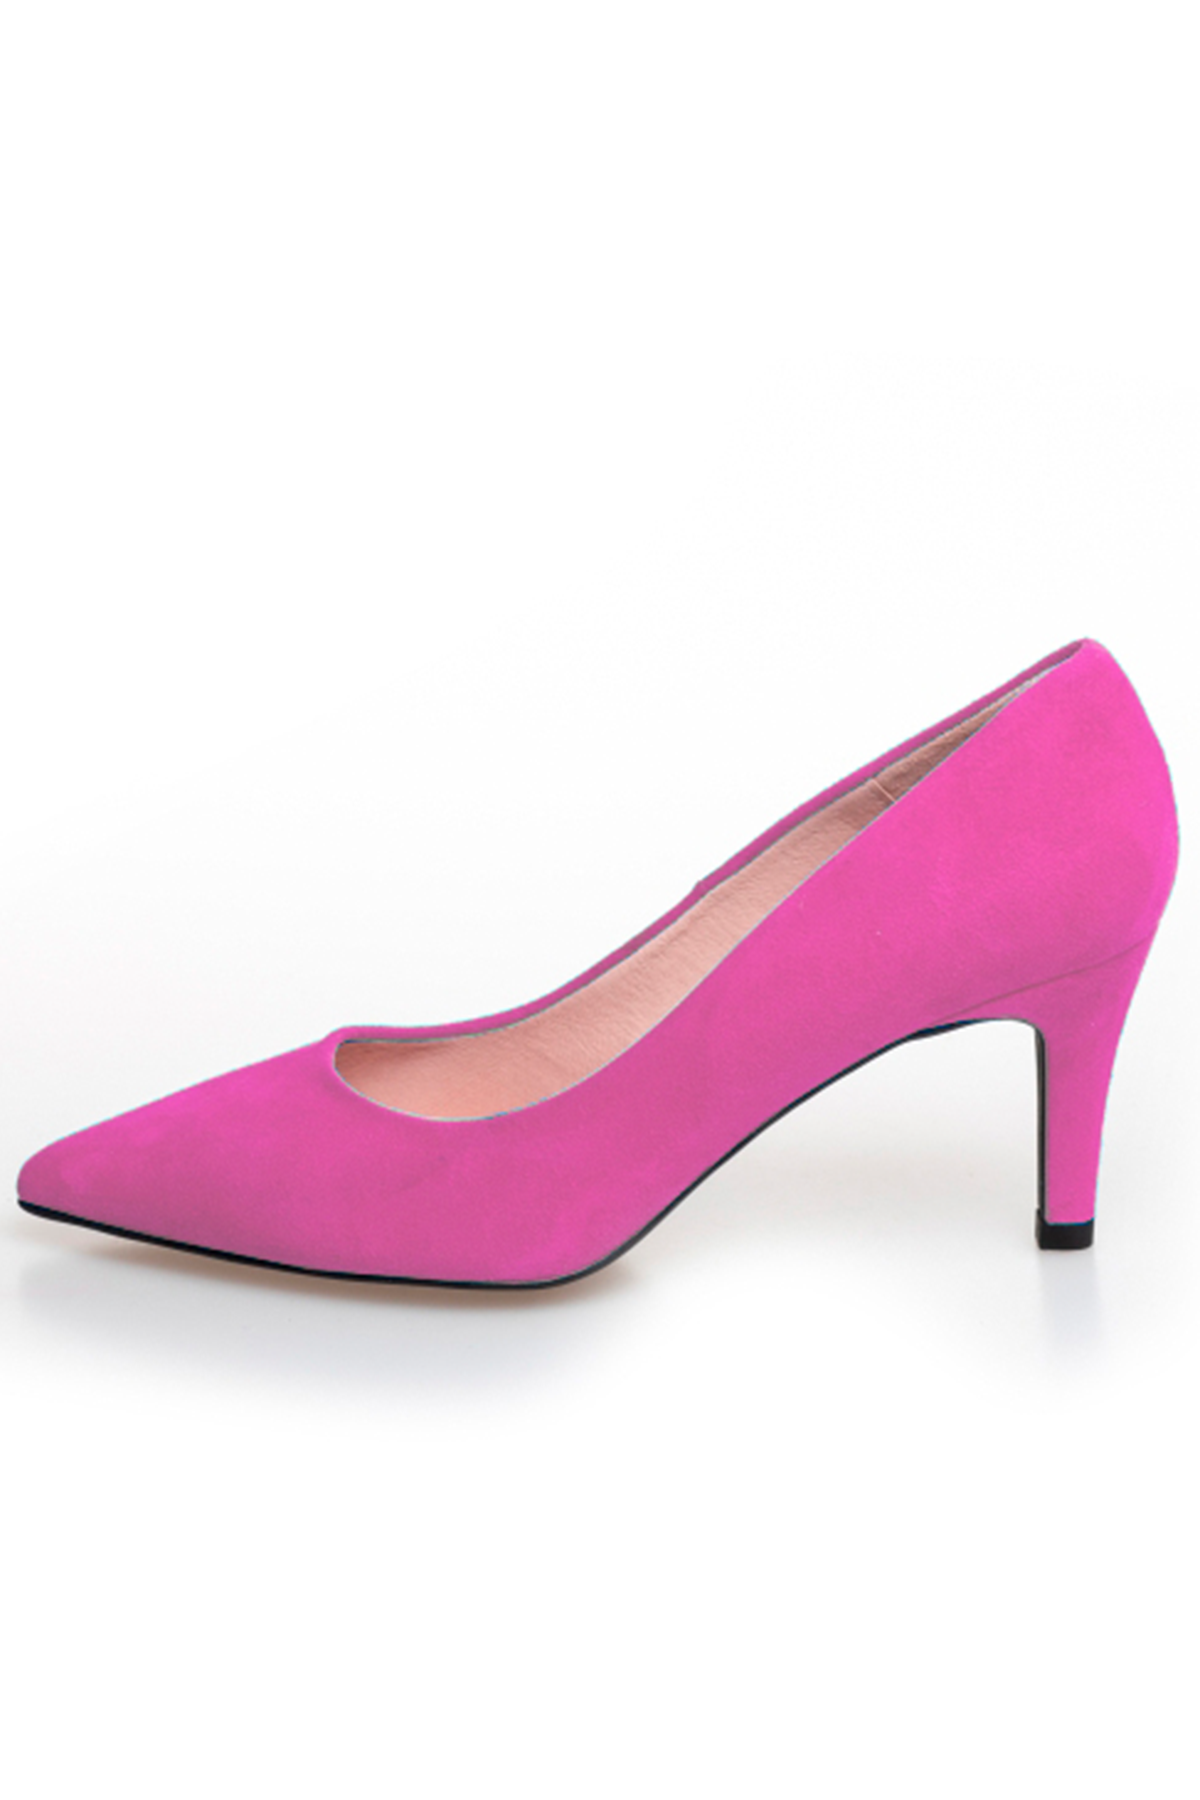 Copenhagen Shoes Siesta Stiletto Cs, Farve: Pink, Størrelse: 36, Dame